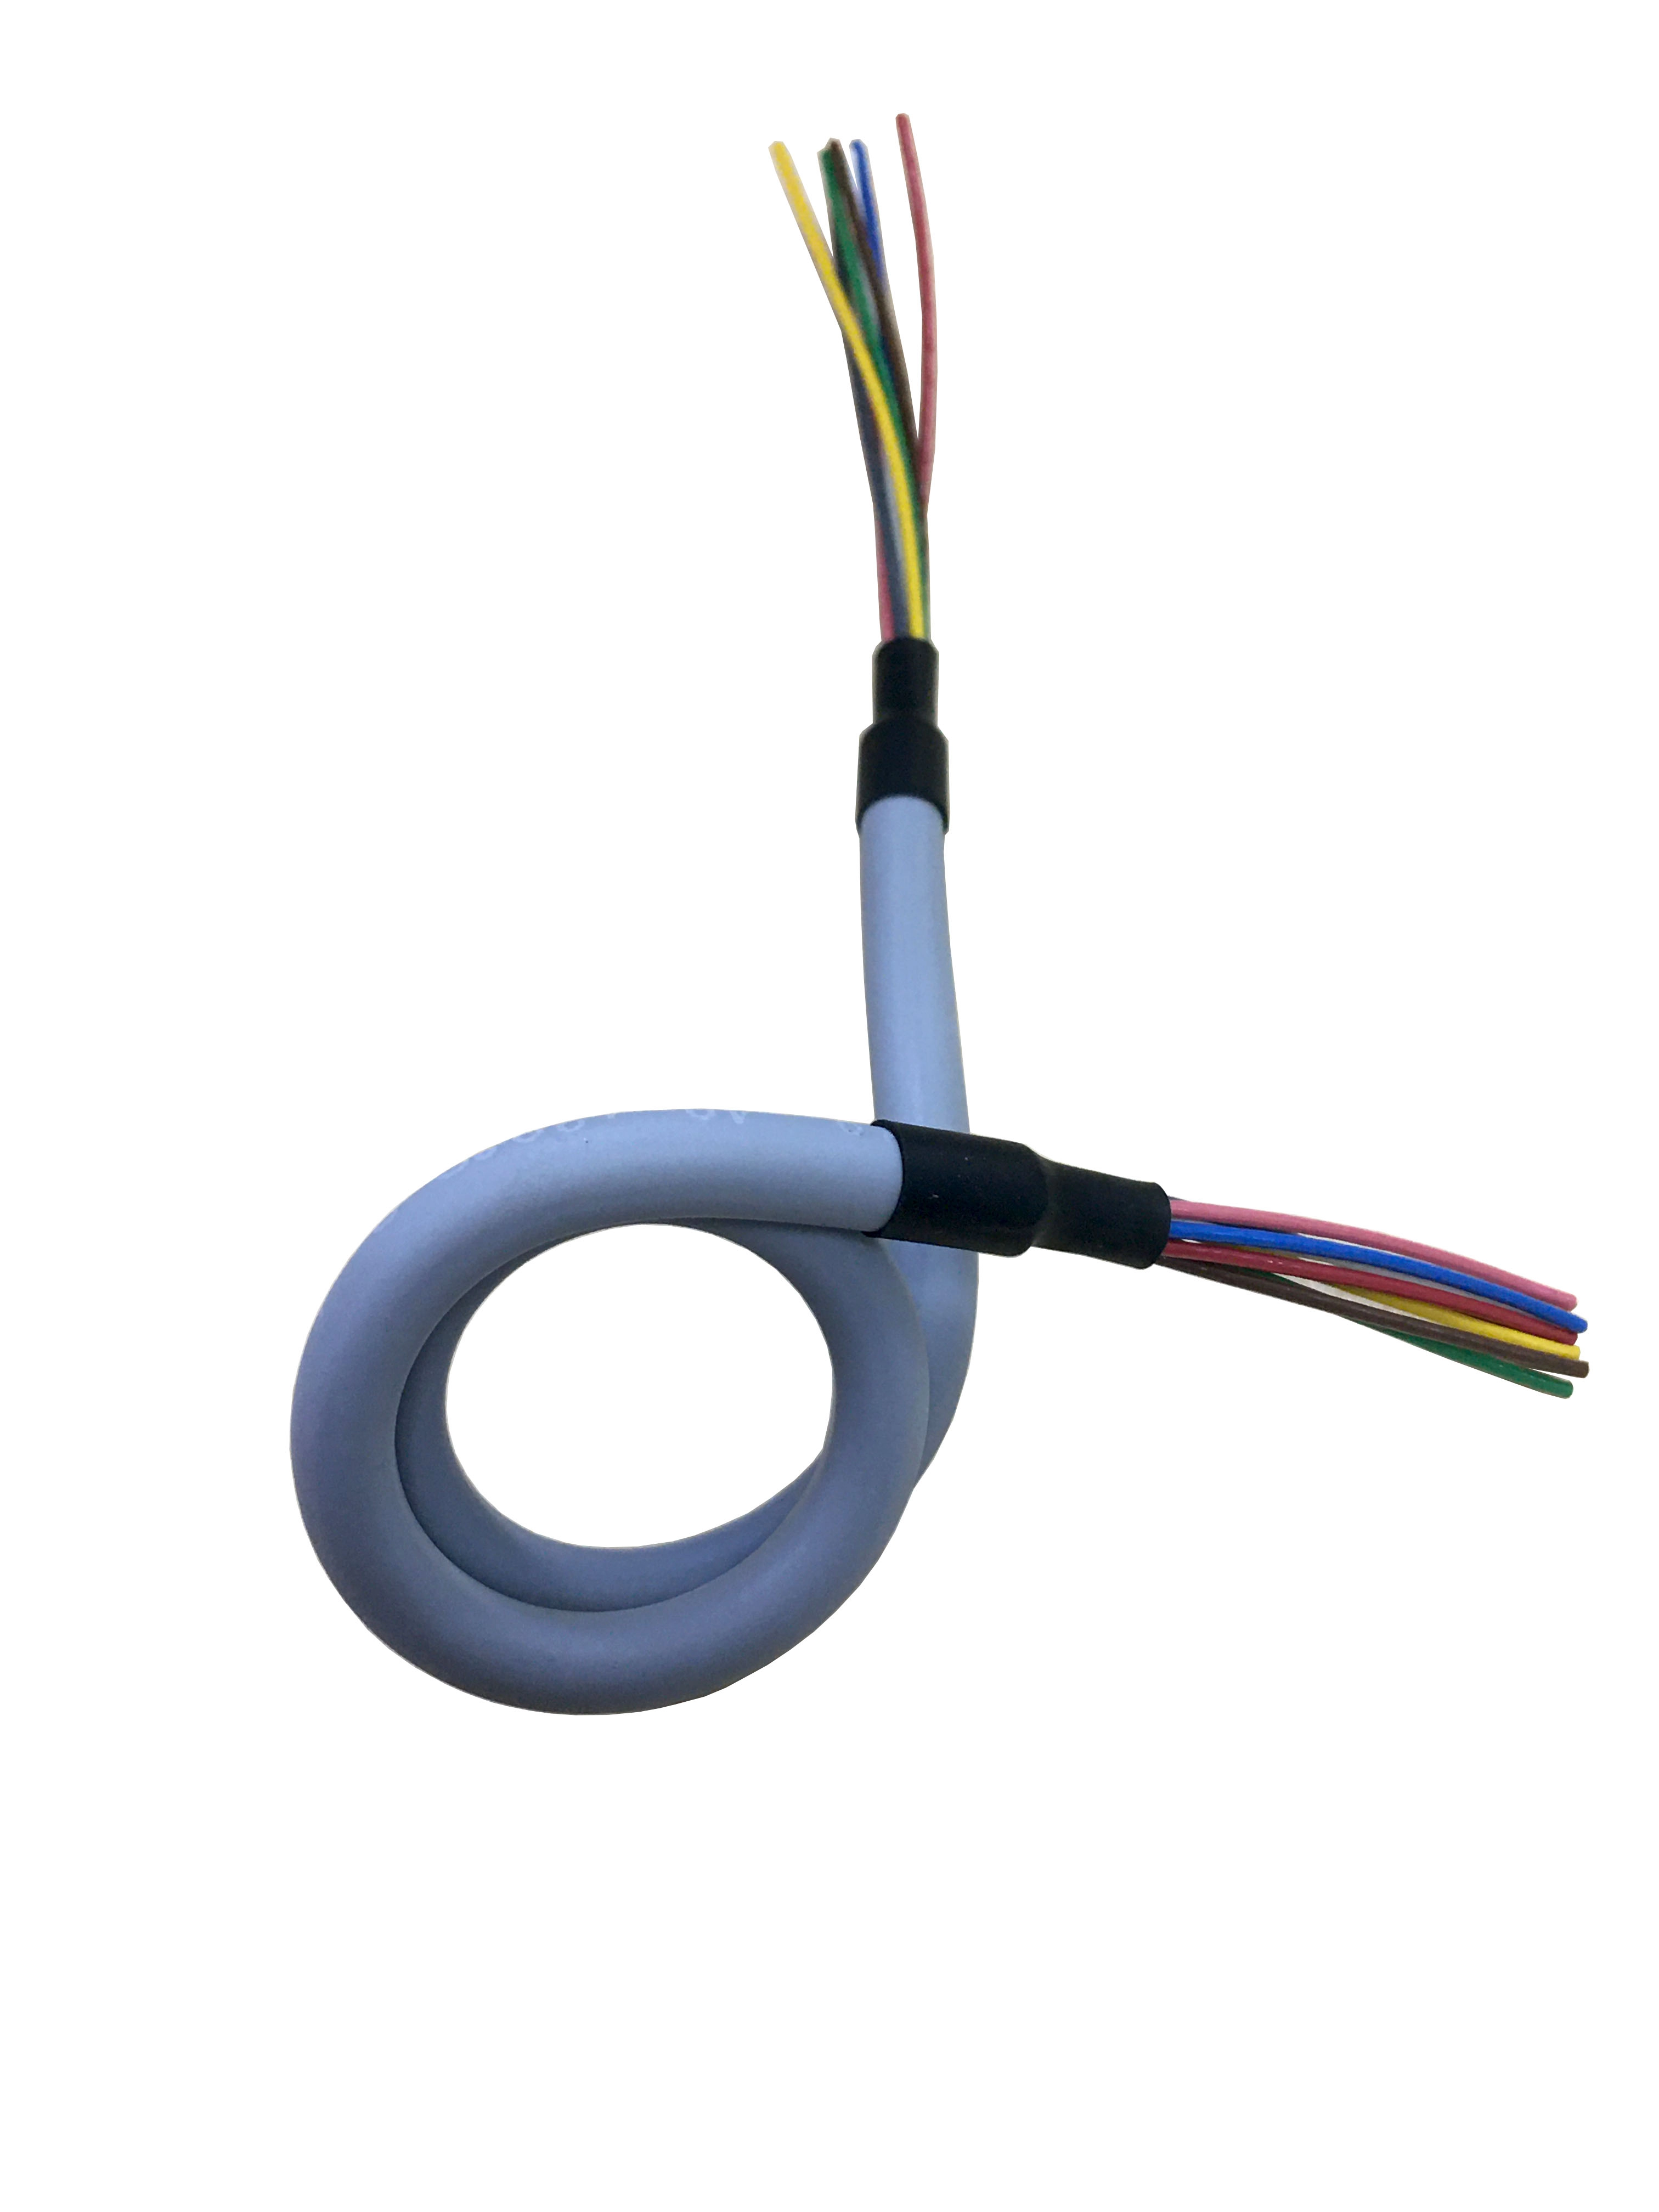 Объемный кабель Кабель ТПУ для общего велосипеда Катушка Полиуретановый кабель